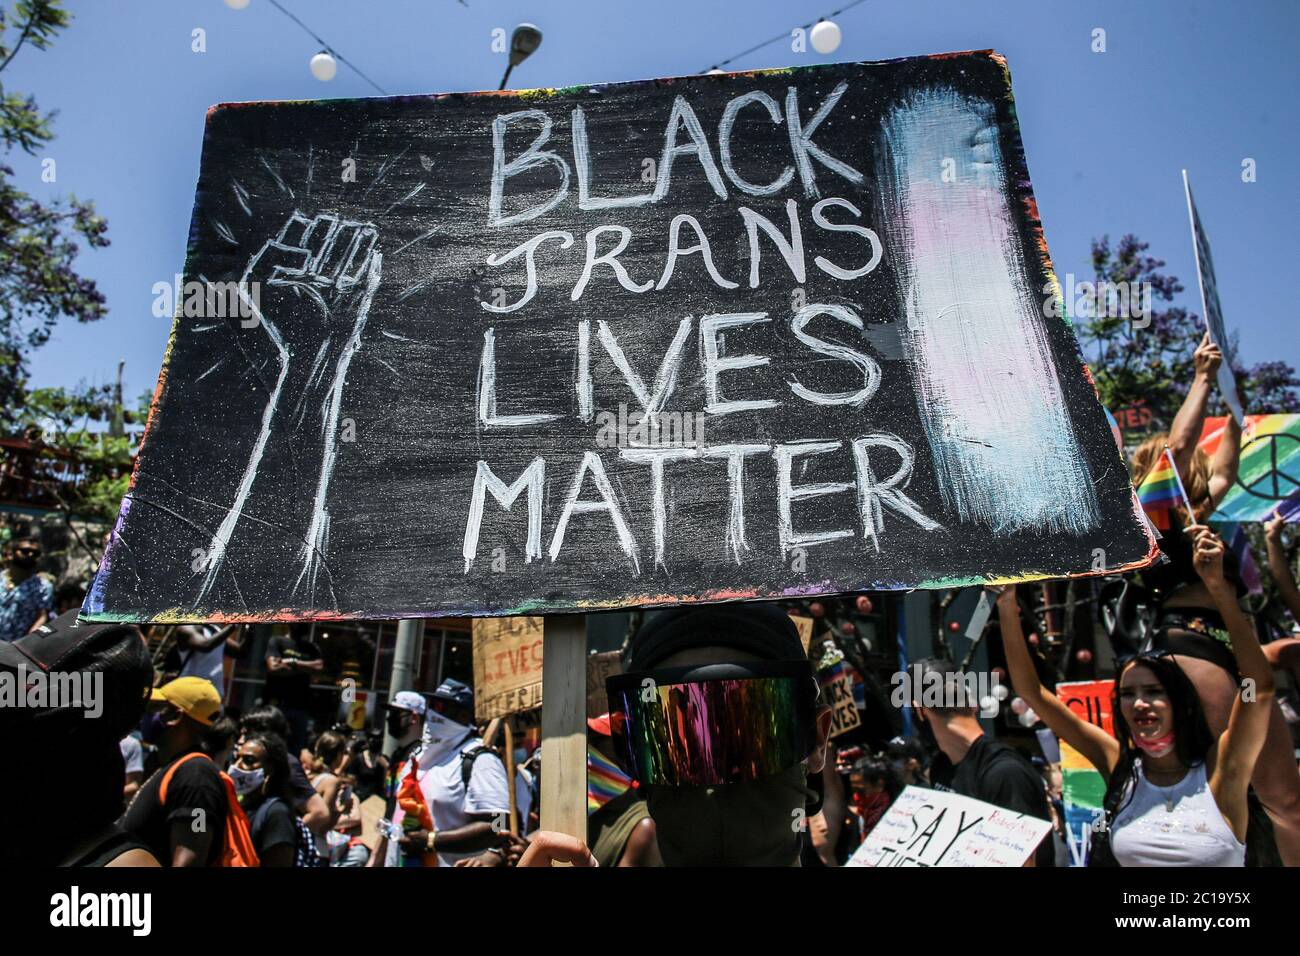 Los Angeles, Stati Uniti. 14 Giugno 2020. Un protester tiene un cartello che dice 'Black Trans Lives Matter' durante la marcia. Migliaia di manifestanti si sono incontrati domenica a marzo a Hollywood e a West Hollywood in una marcia di solidarietà anti-razzismo. Il giorno originariamente era destinato a tenere la Parata DI LA Pride, ma la Parata di Pride era stata precedentemente annullata a causa della pandemia COVID-19. Gli organizzatori hanno detto all'inizio di questo mese che avrebbero organizzato una marcia in solidarietà con la questione Black Lives e contro la brutalità e l'oppressione della polizia. Credit: SOPA Images Limited/Alamy Live News Foto Stock